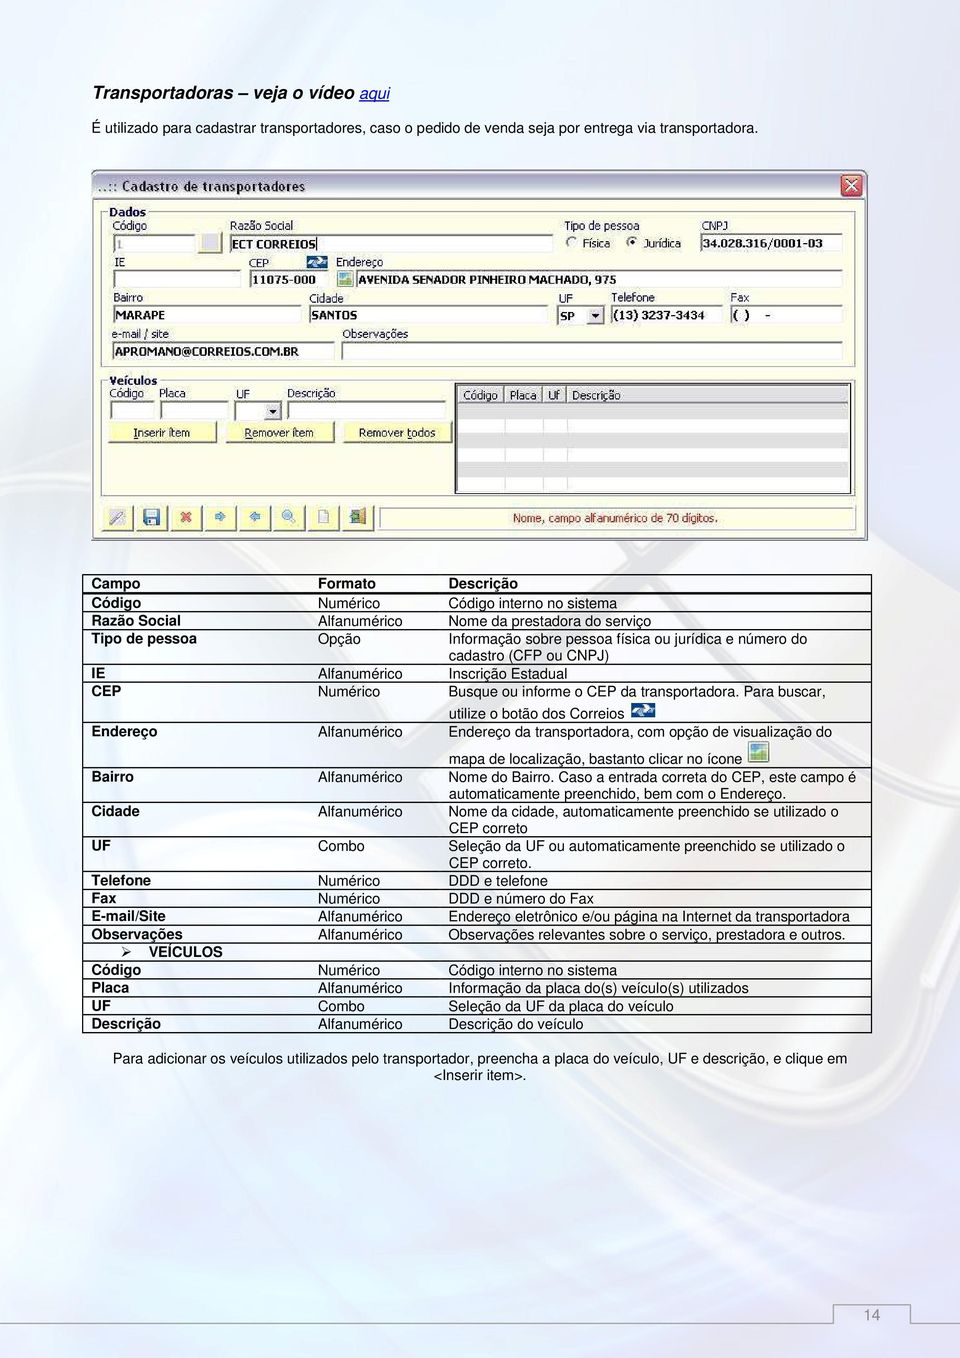 cadastro (CFP ou CNPJ) IE Alfanumérico Inscrição Estadual CEP Numérico Busque ou informe o CEP da transportadora.